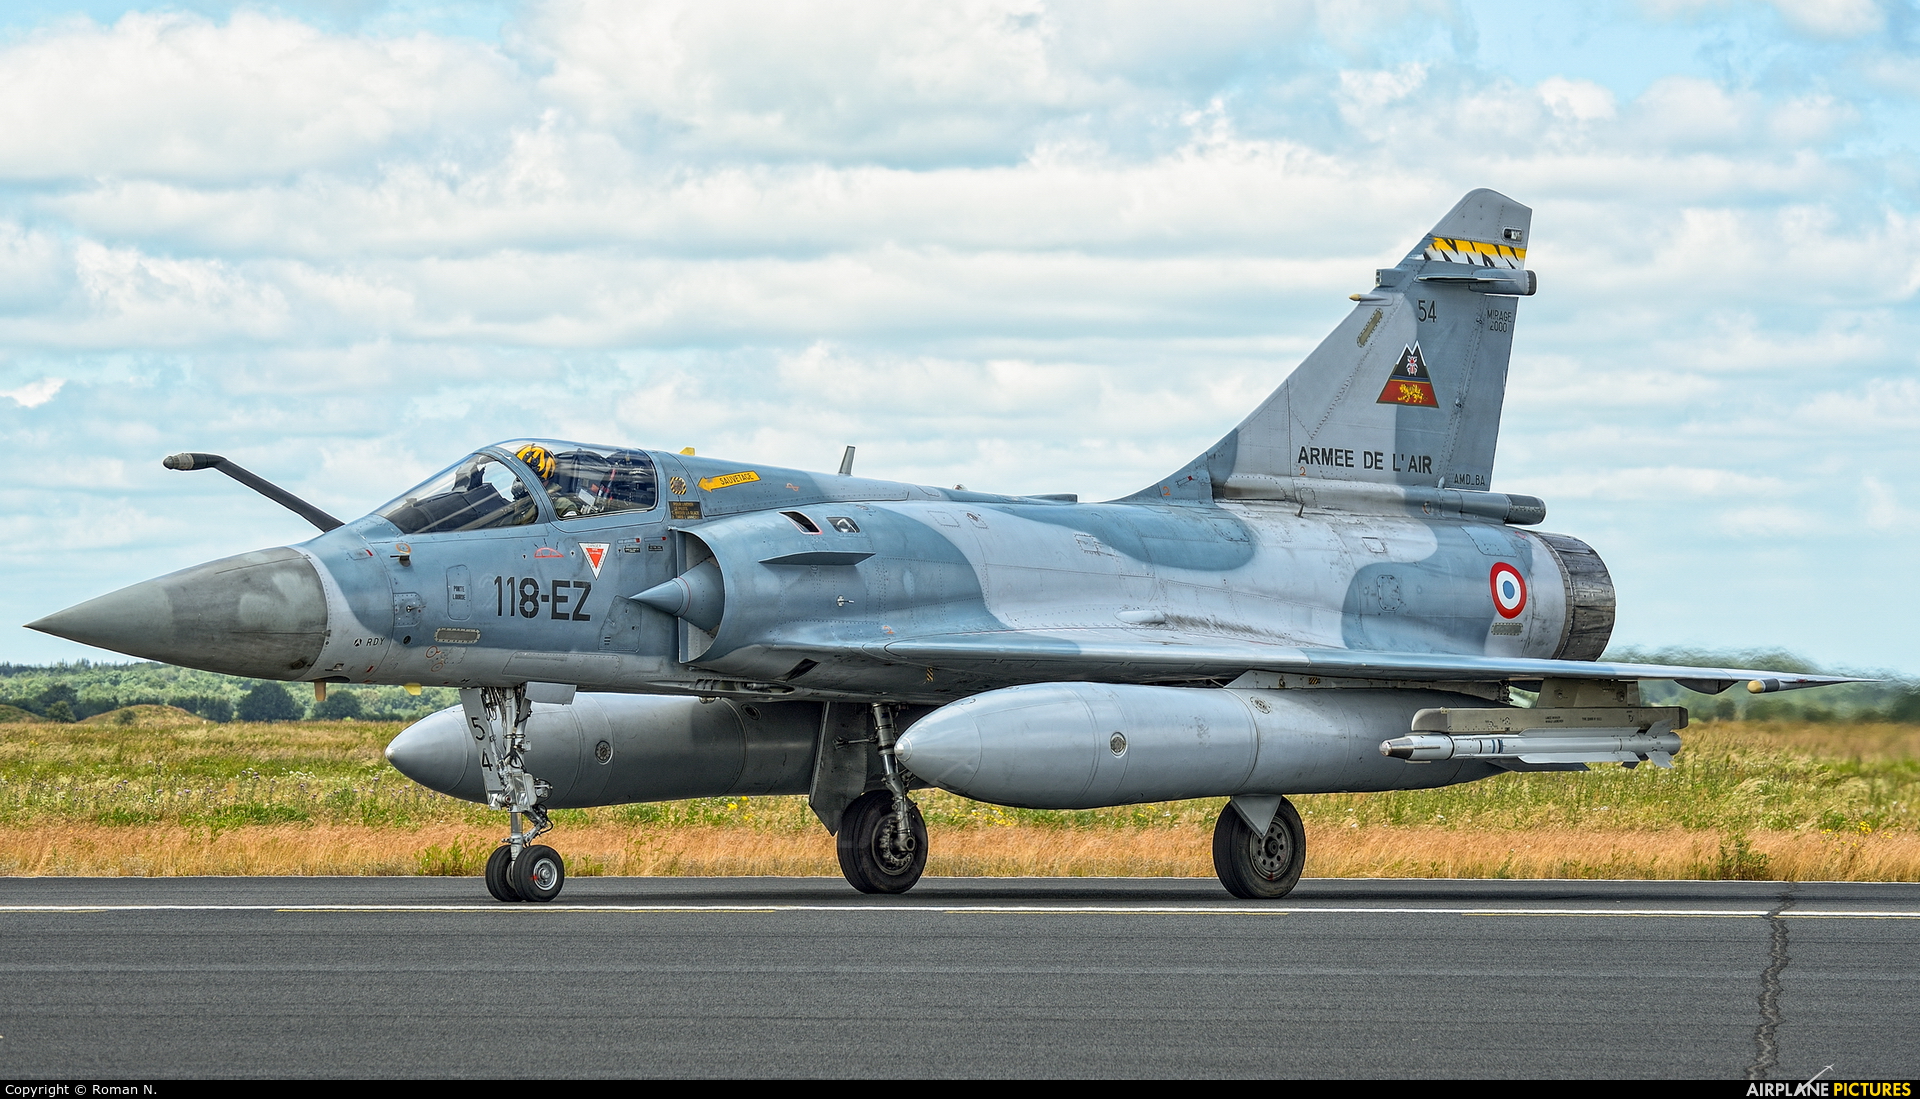 Συναγερμός στη Γαλλία: Κατέπεσε Mirage 2000 – Εντοπίστηκαν συντρίμμια – Έρευνες για τους δυο πιλότους (upd)